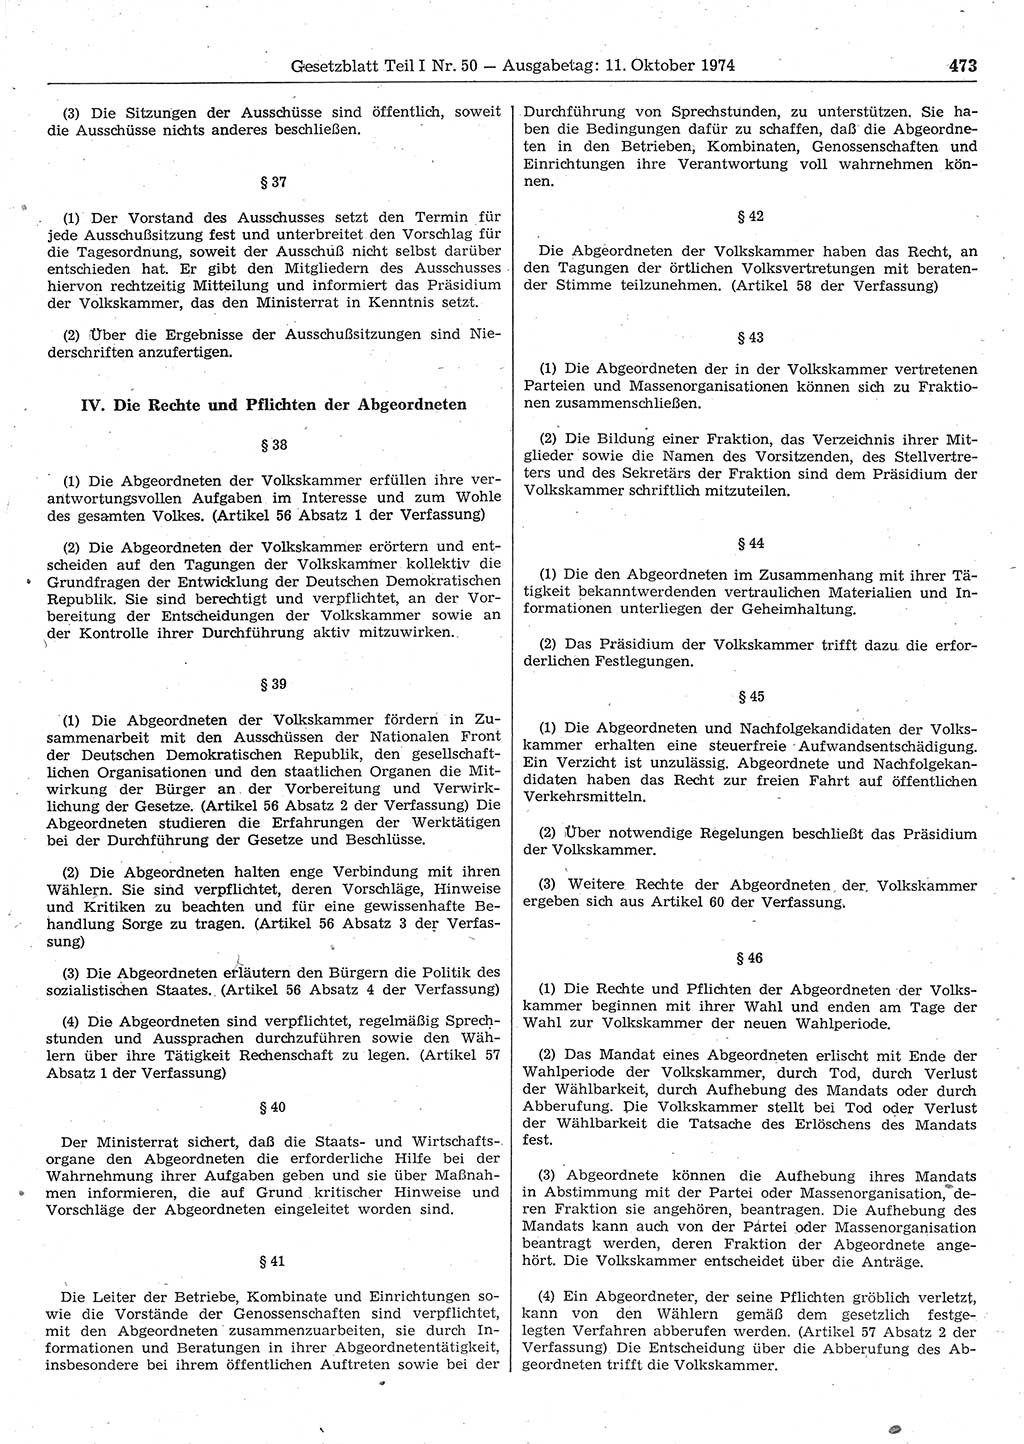 Gesetzblatt (GBl.) der Deutschen Demokratischen Republik (DDR) Teil Ⅰ 1974, Seite 473 (GBl. DDR Ⅰ 1974, S. 473)